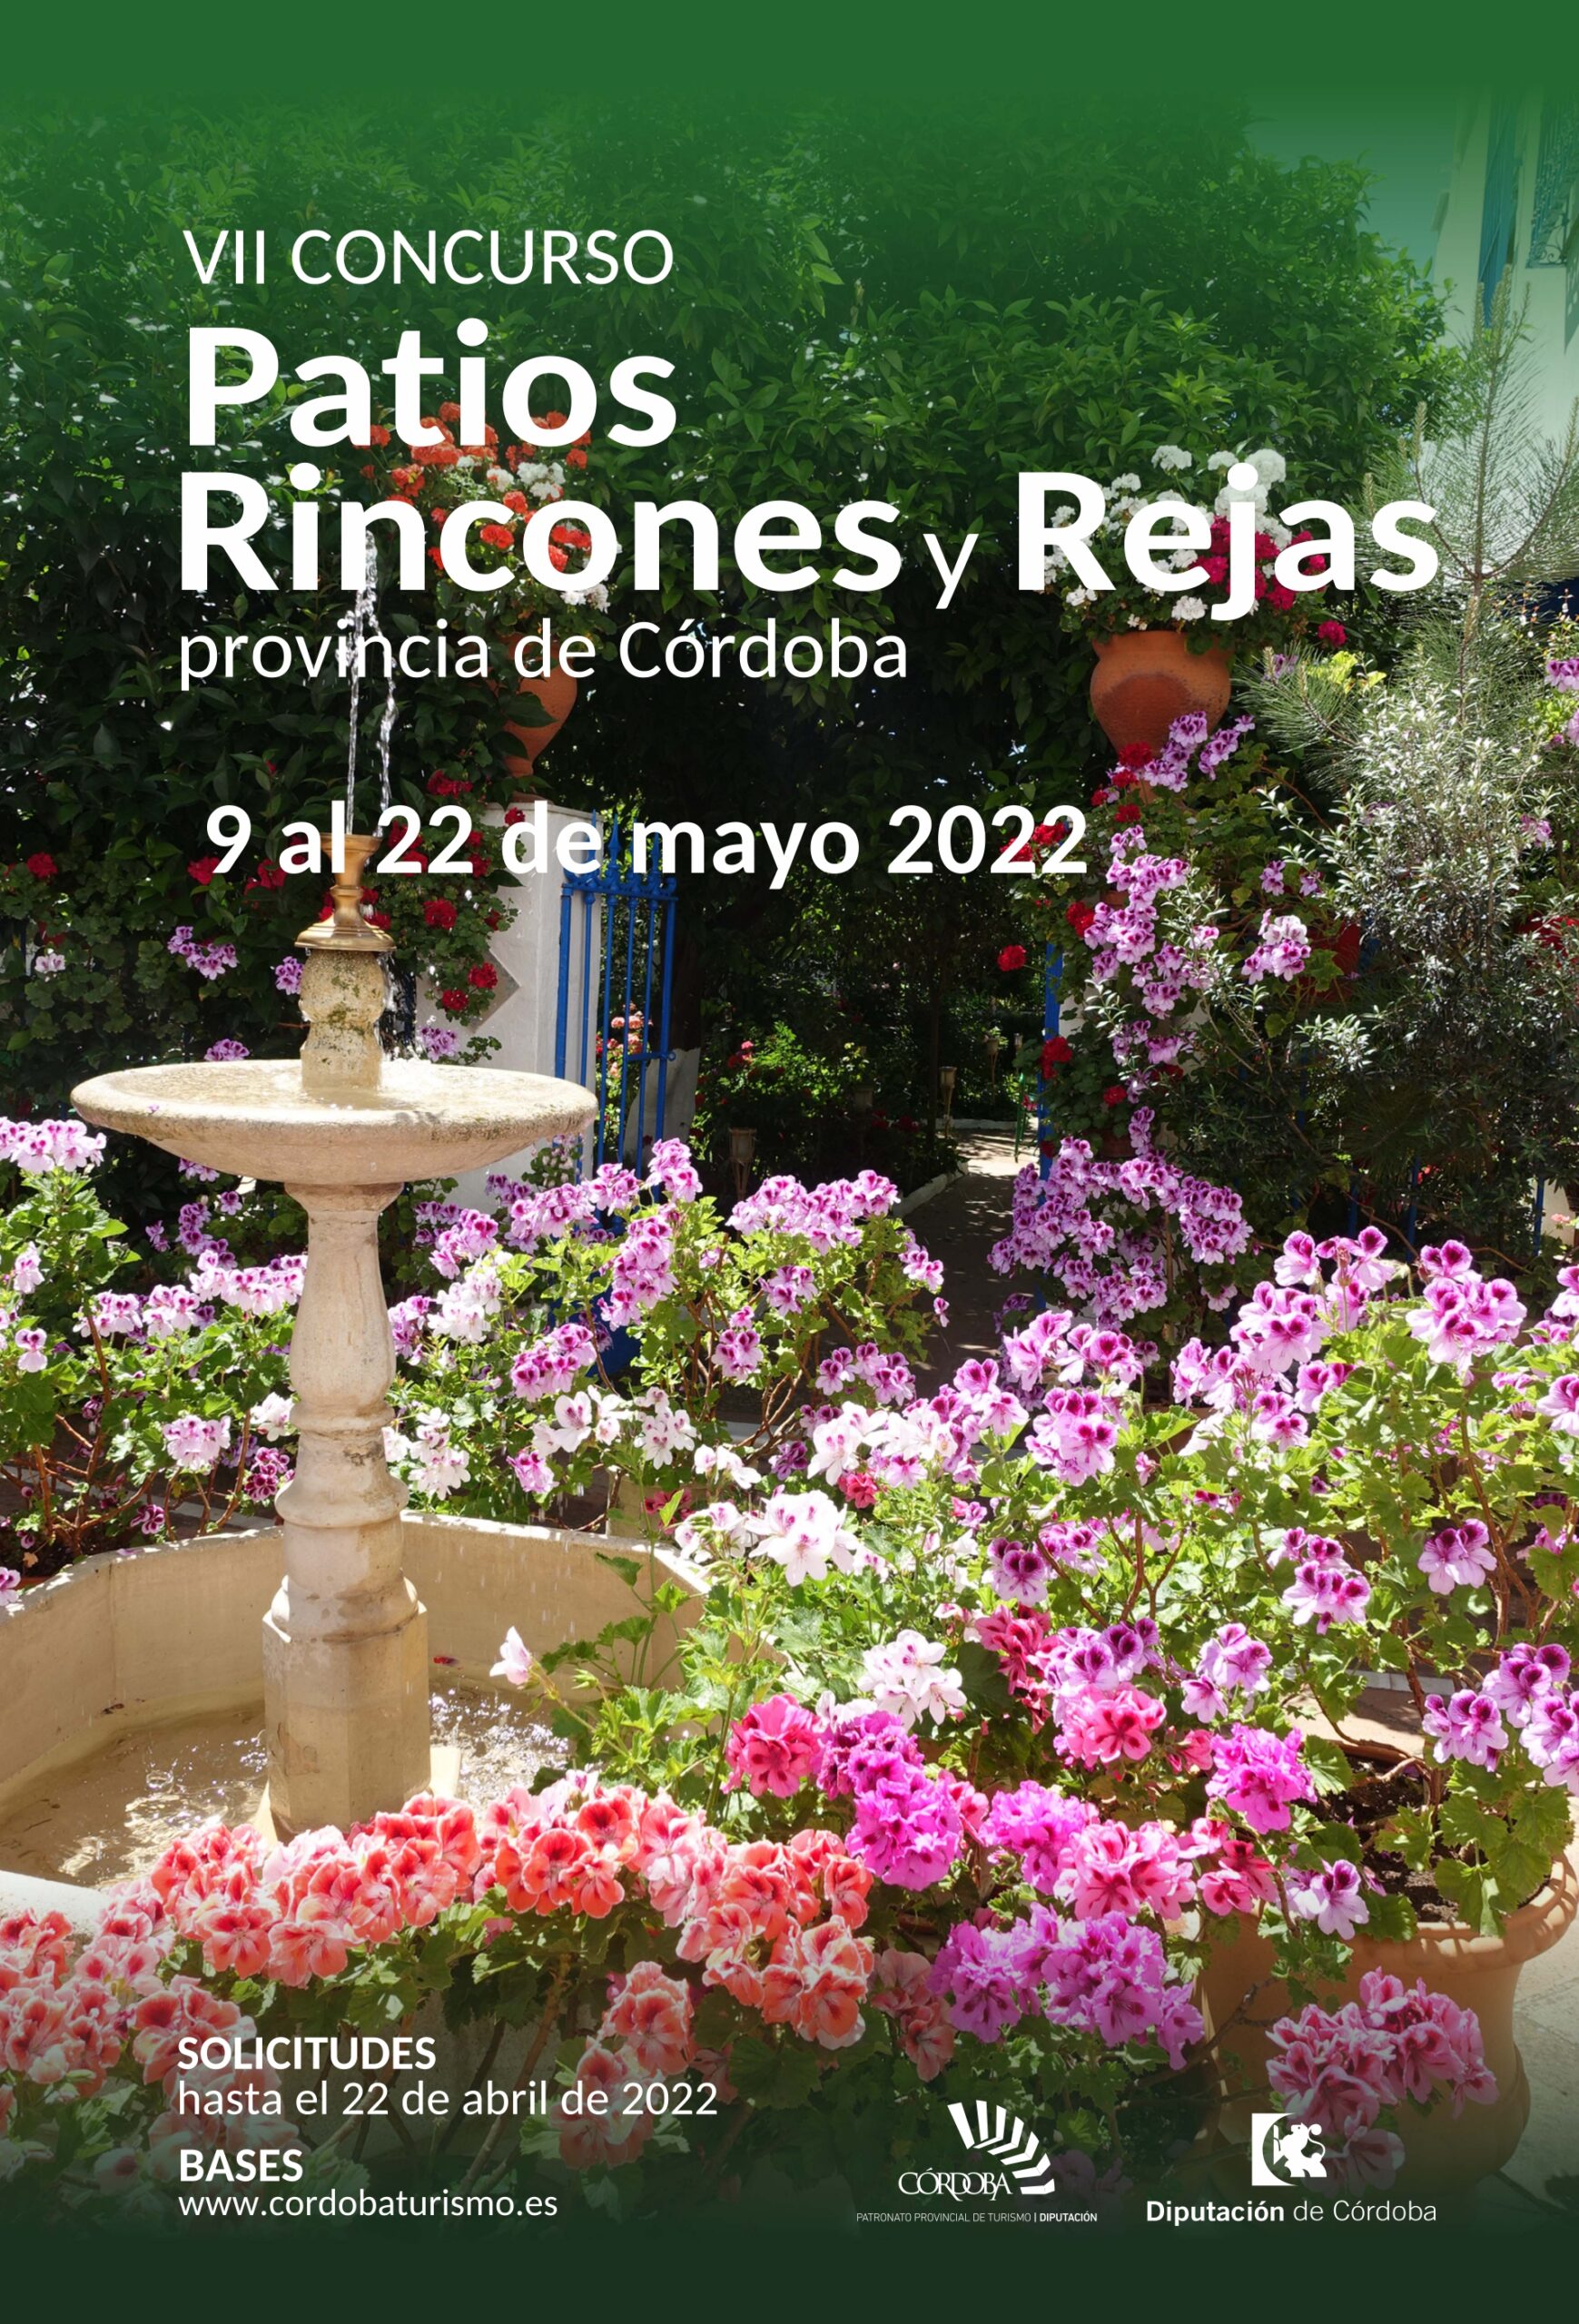 VII Concurso de Patios, rincones y rejas de la provincia de Córdoba